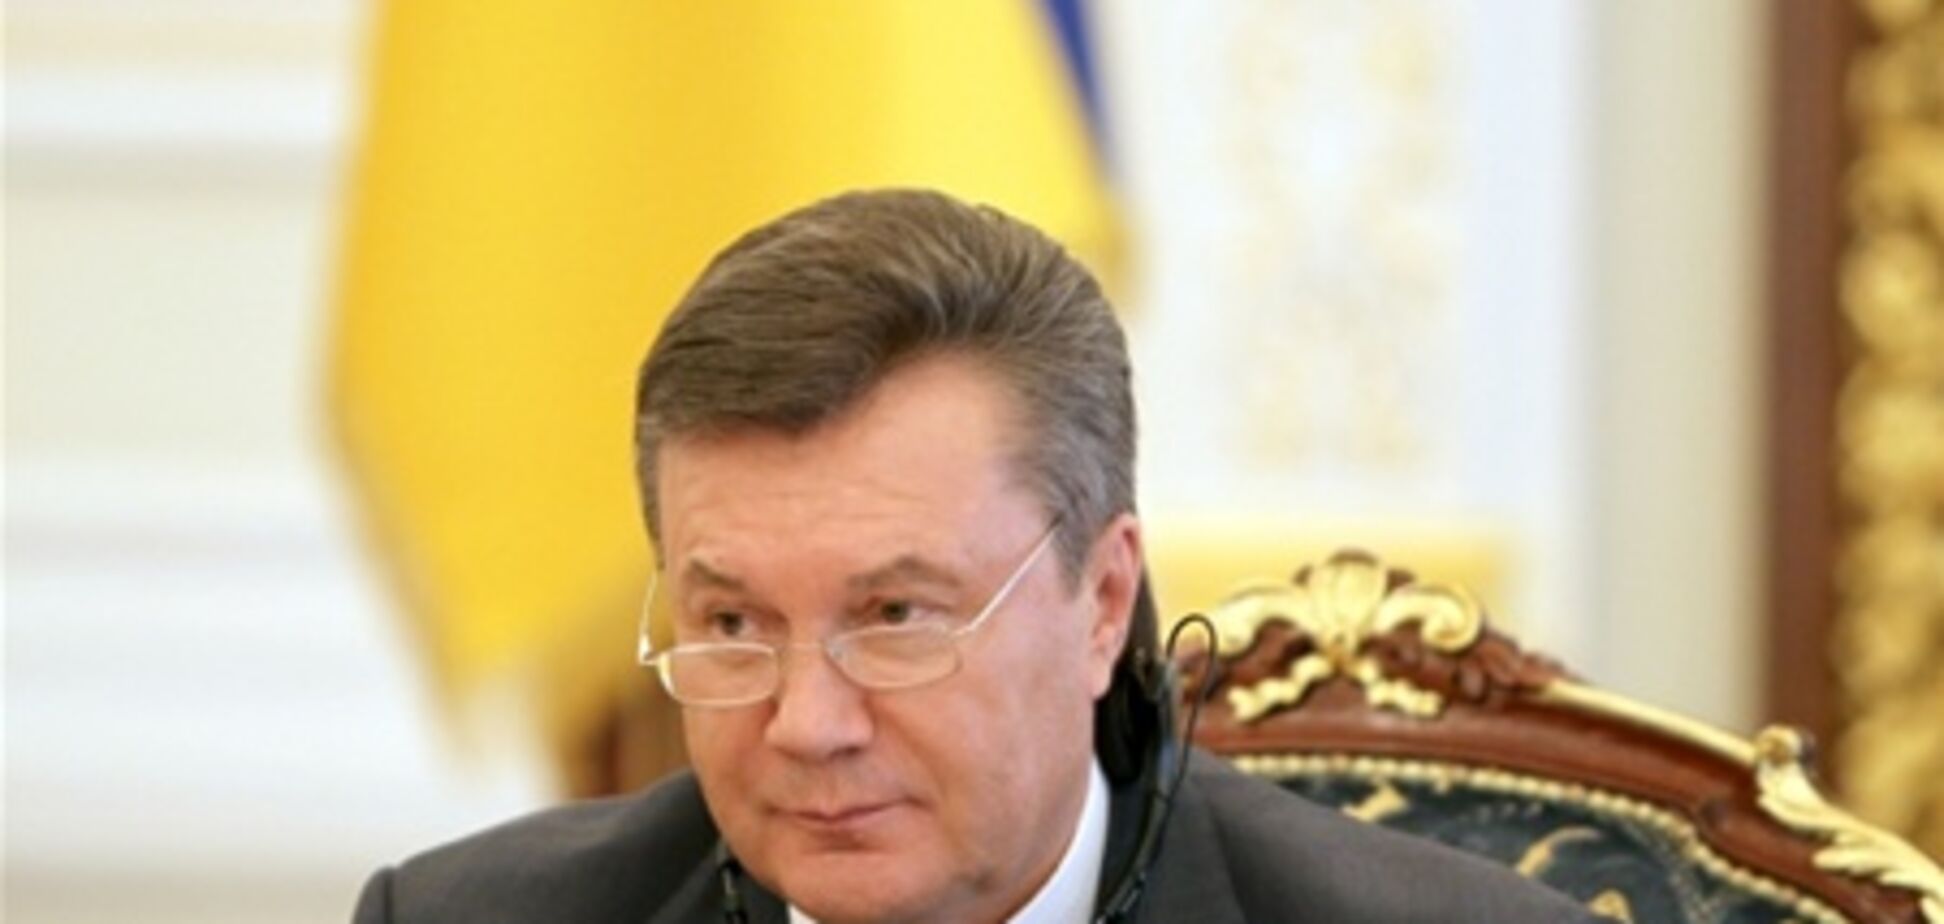 Янукович подписал изменения в Налоговый кодекс